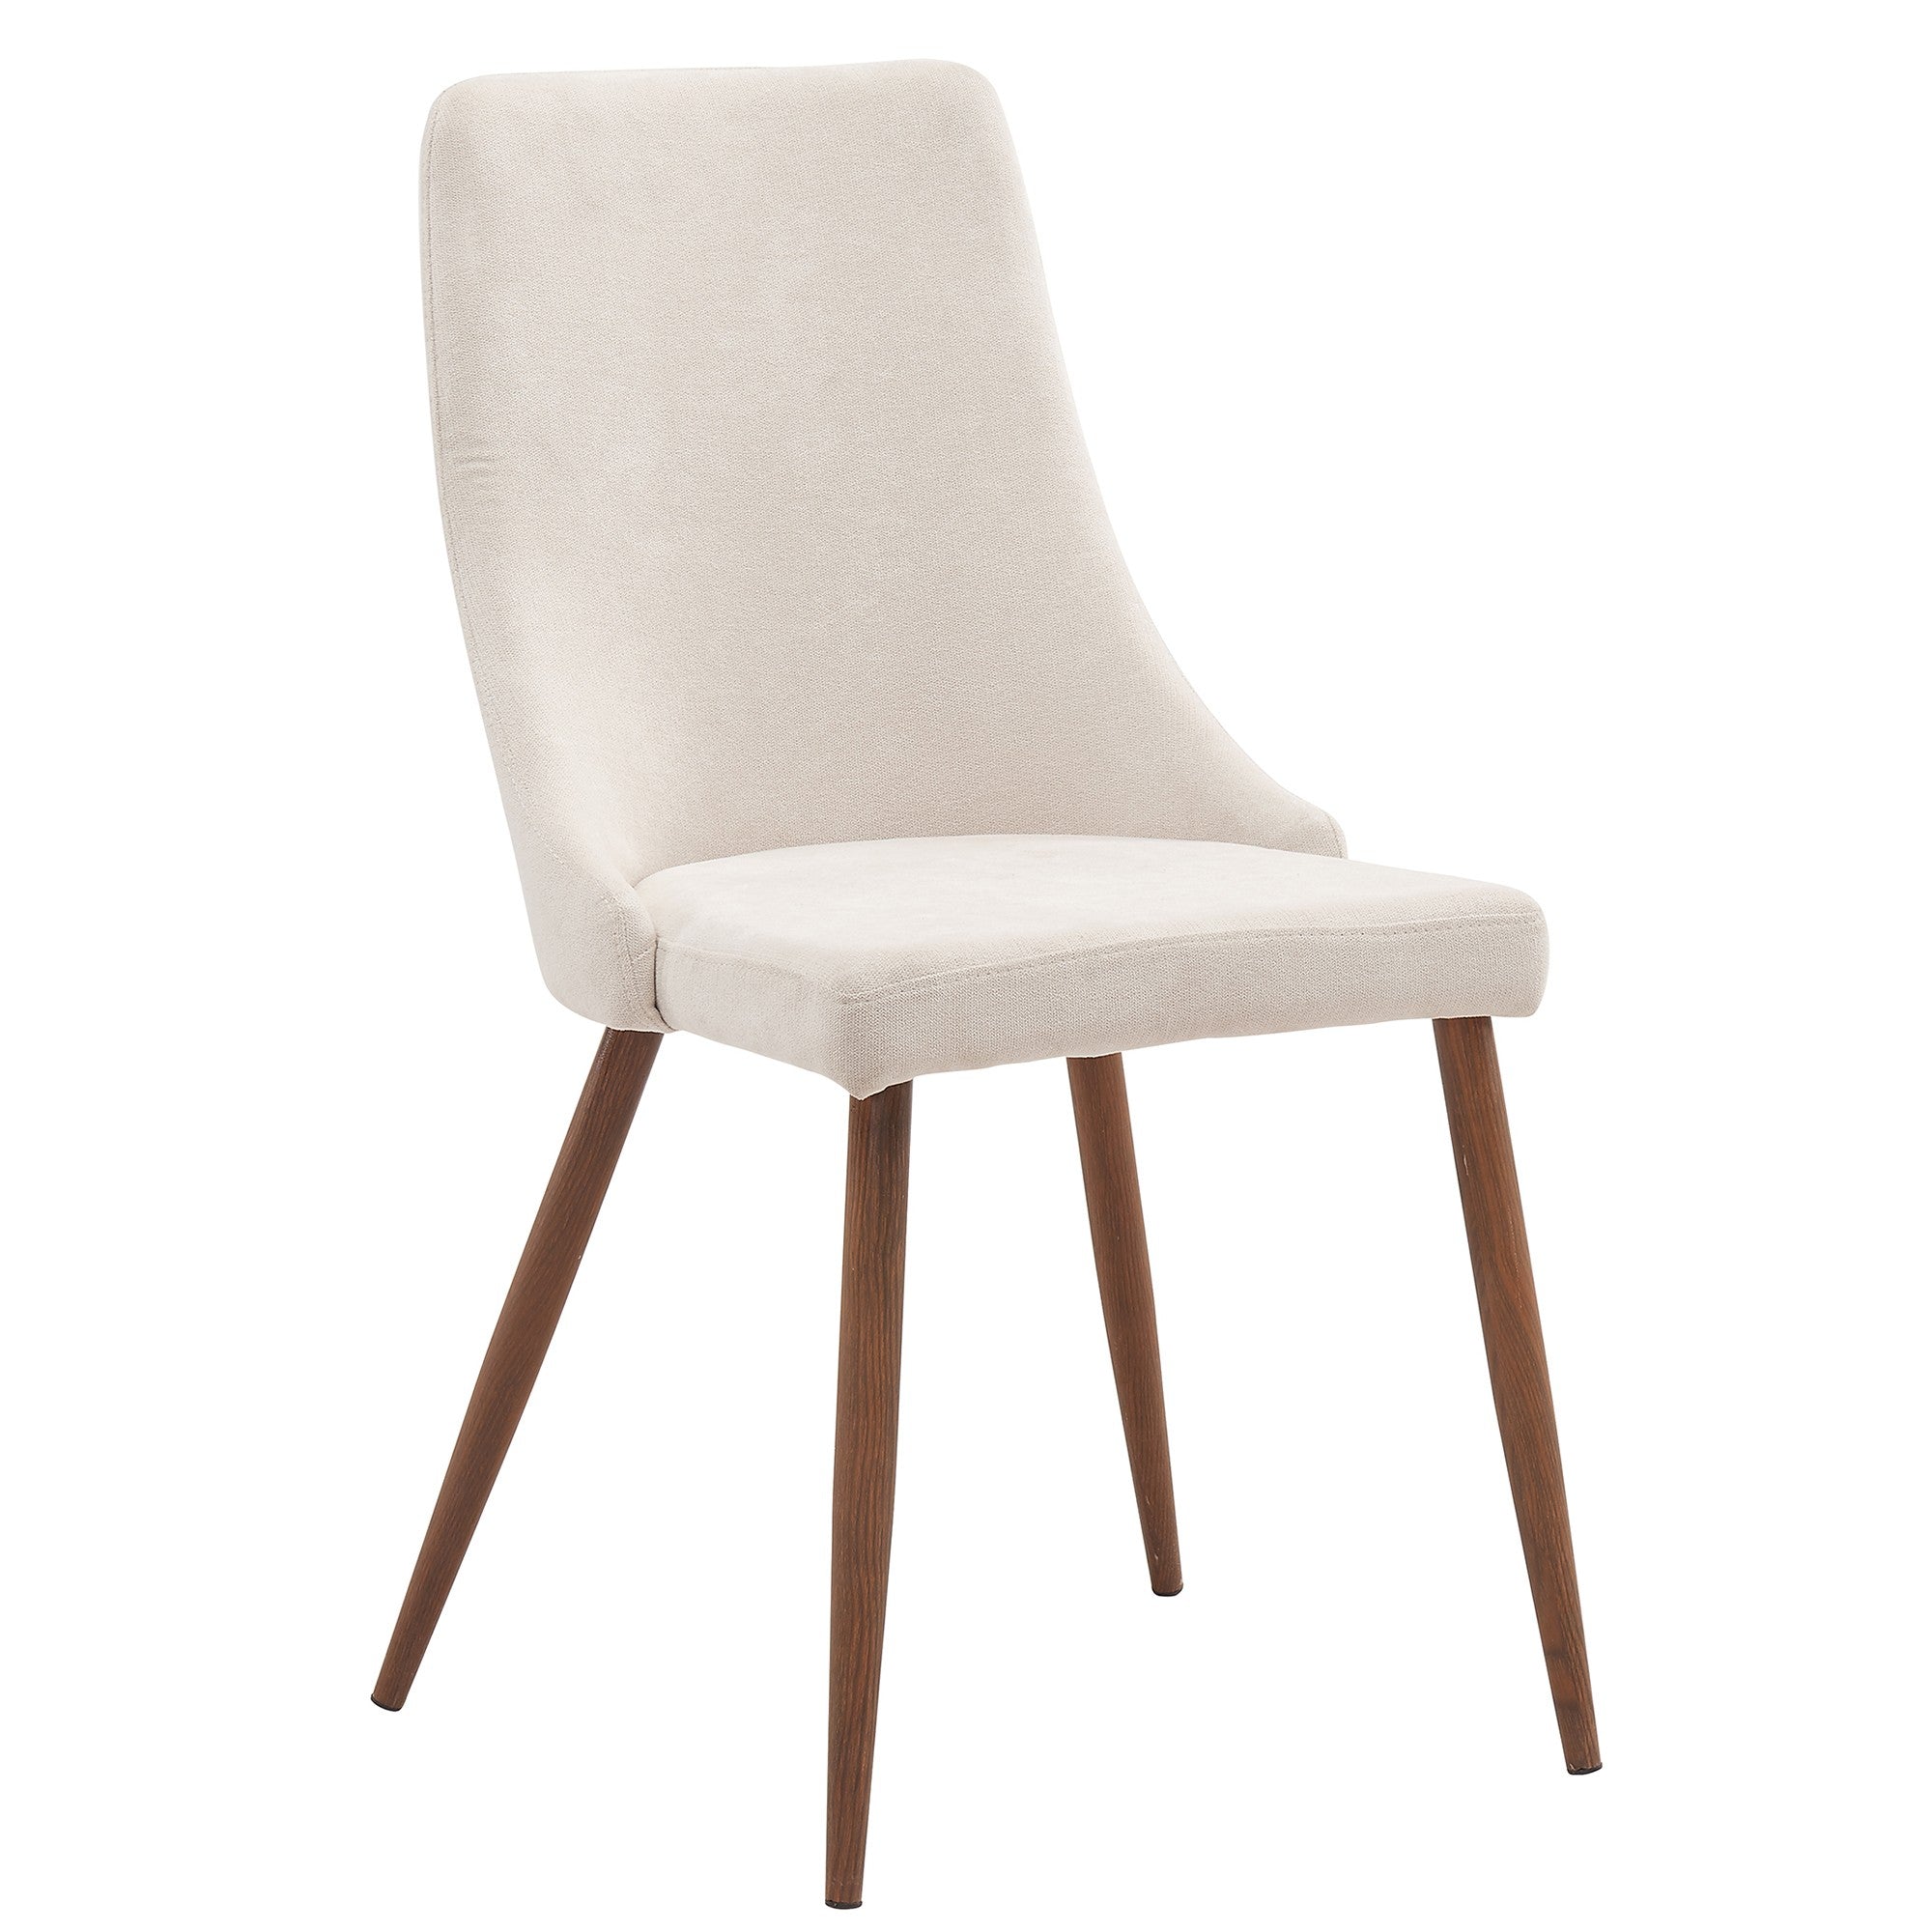 Cora Side Chair in Beige, Set of 2 - Worldwide Homefurnishings Inc